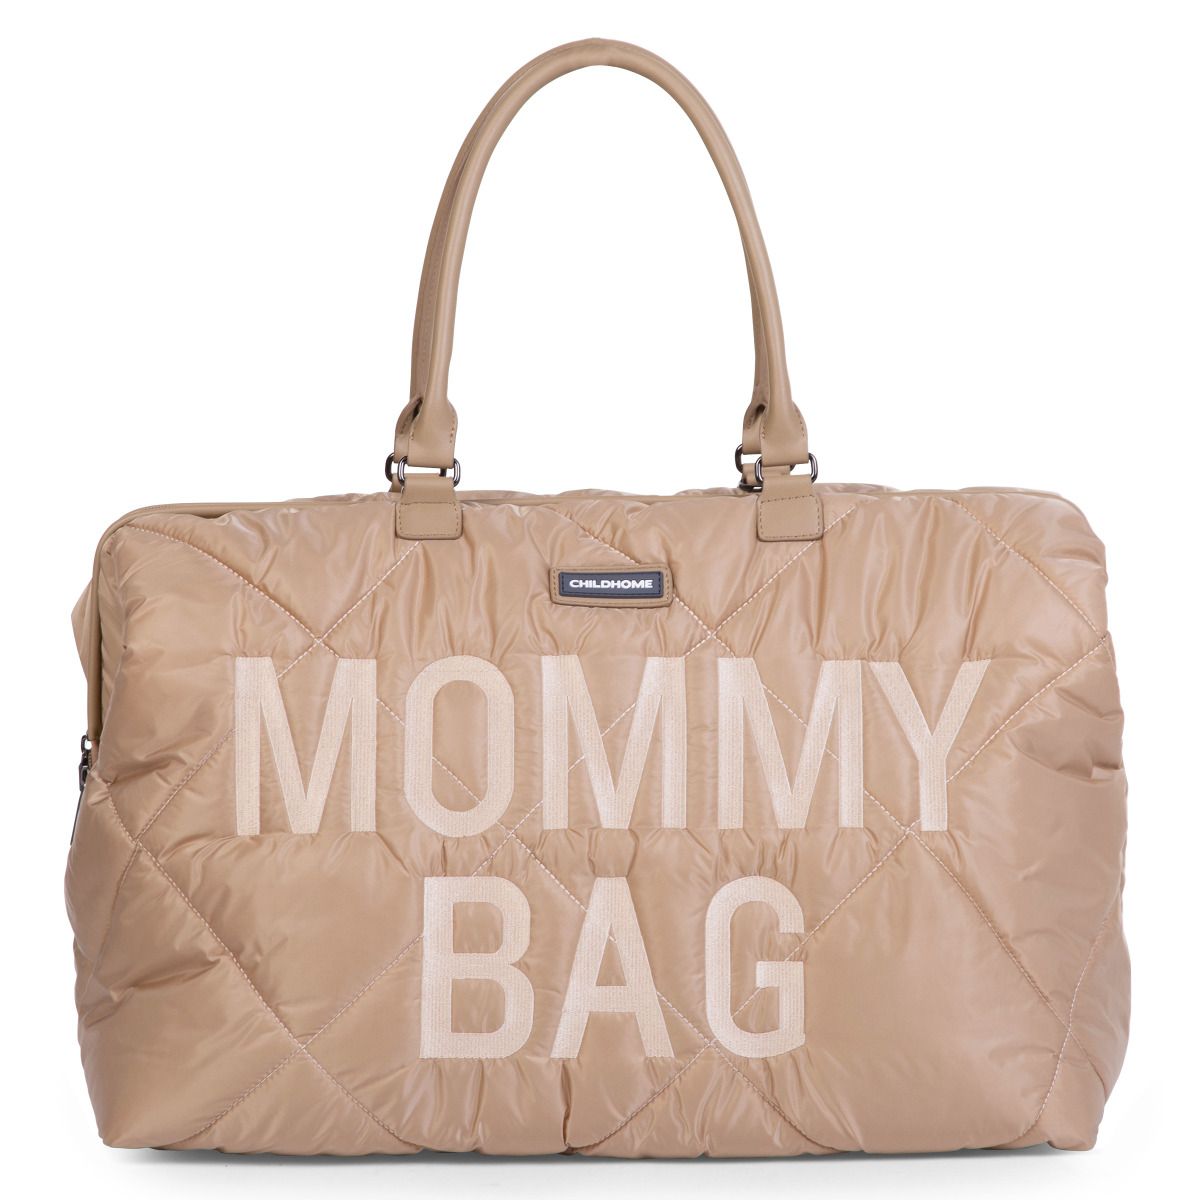 Сумка Childhome Mommy bag, дутая, бежевая (CWMBBPBE) - фото 1